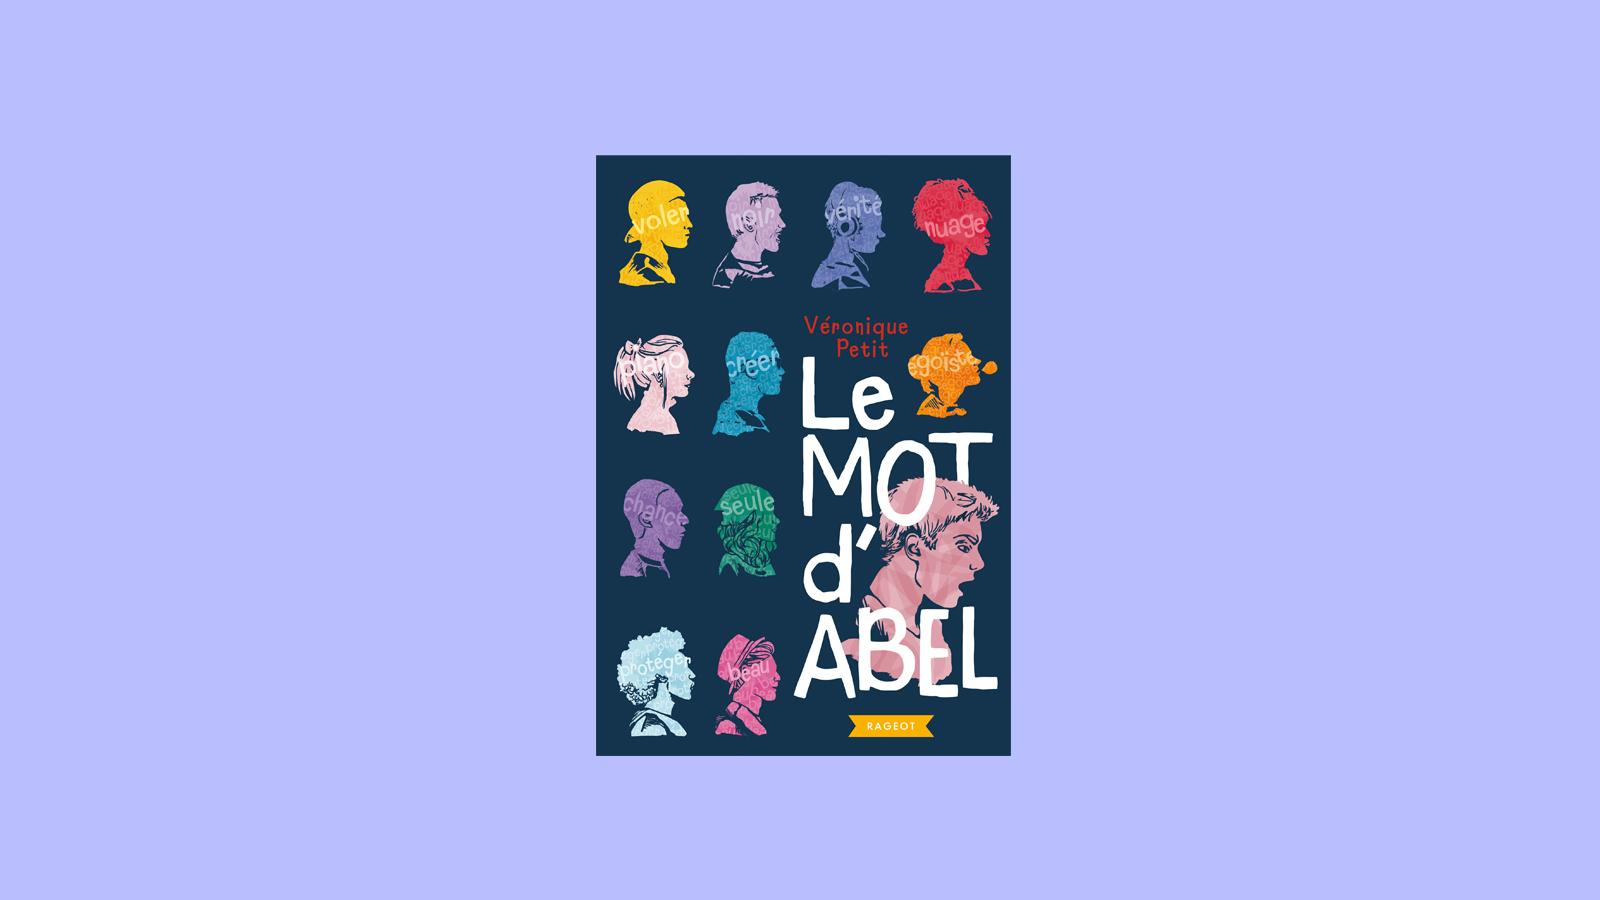 Le mot d'Abel, un livre de Véronique Petit sélectionné pour le Prix RTS Littérature Ados 2019. [RTS - Rageot]